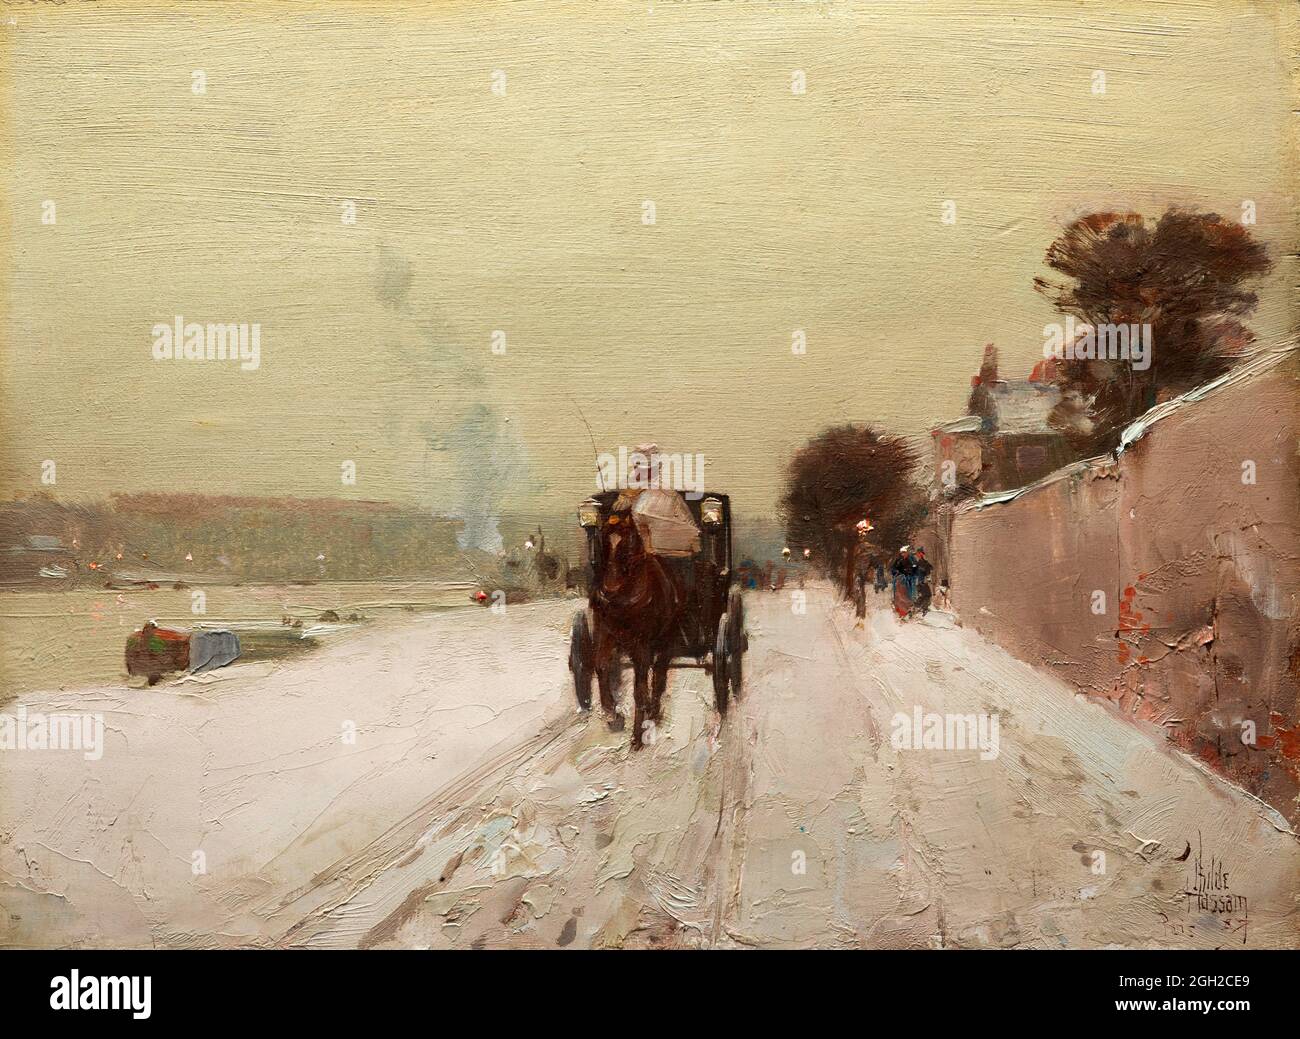 Le long de la Seine en hiver par Childe Hassam (1859-1935), huile sur bois, 1887 Banque D'Images